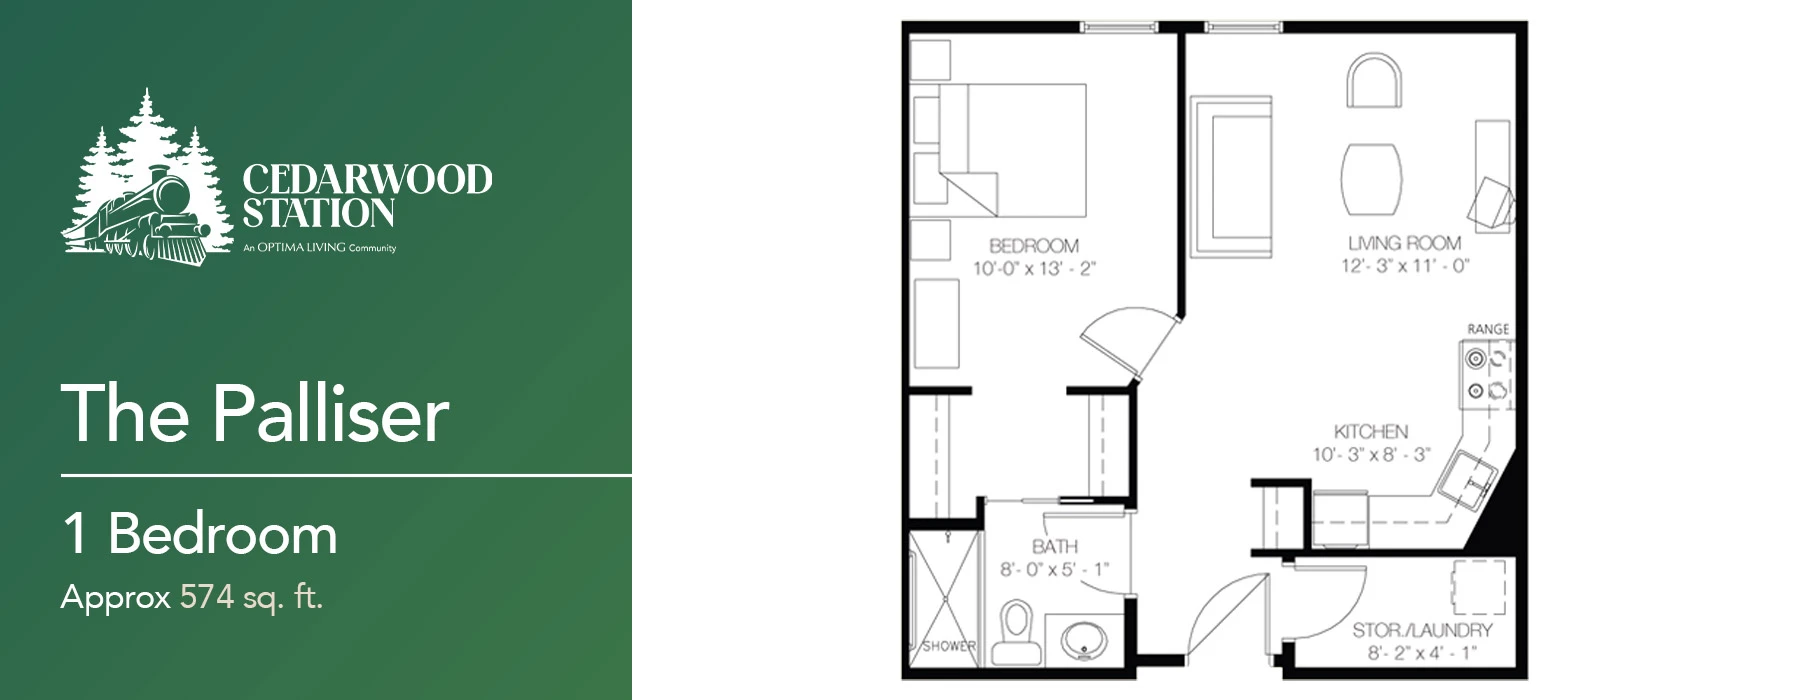 The Palliser 1 bedroom floor plan